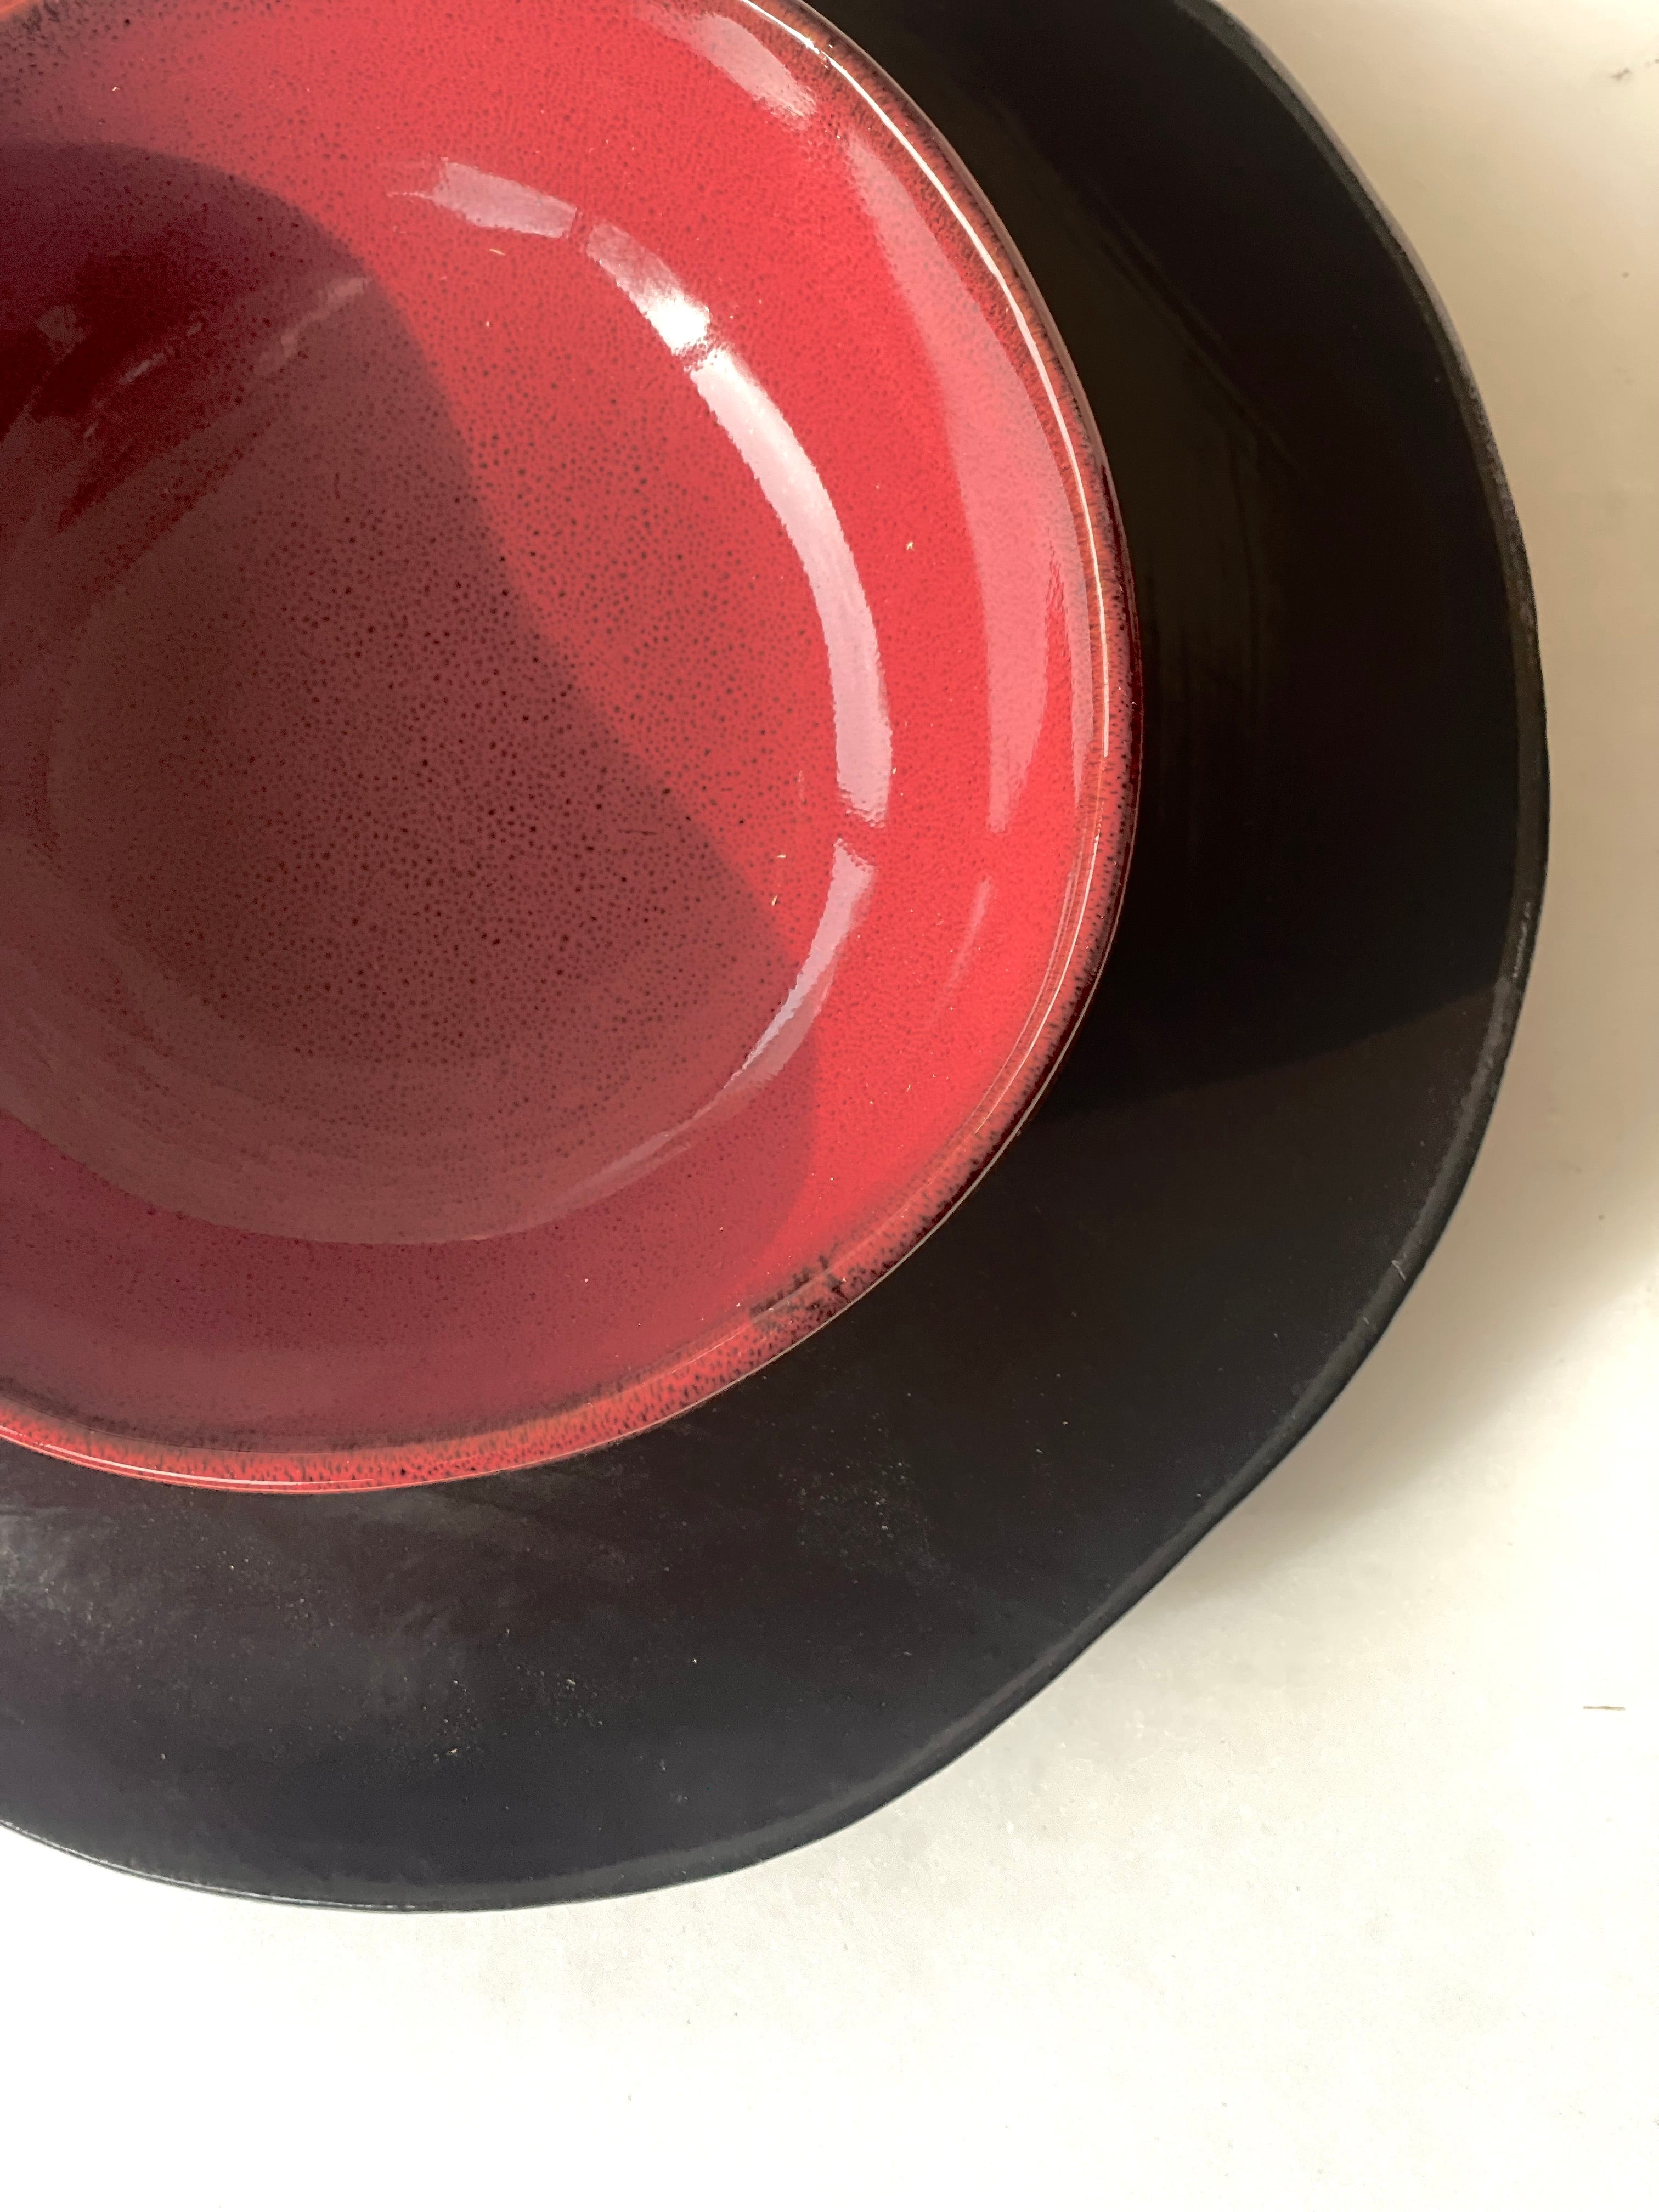 Bowl S - La Mère by Marie Michielssen - Venetian red